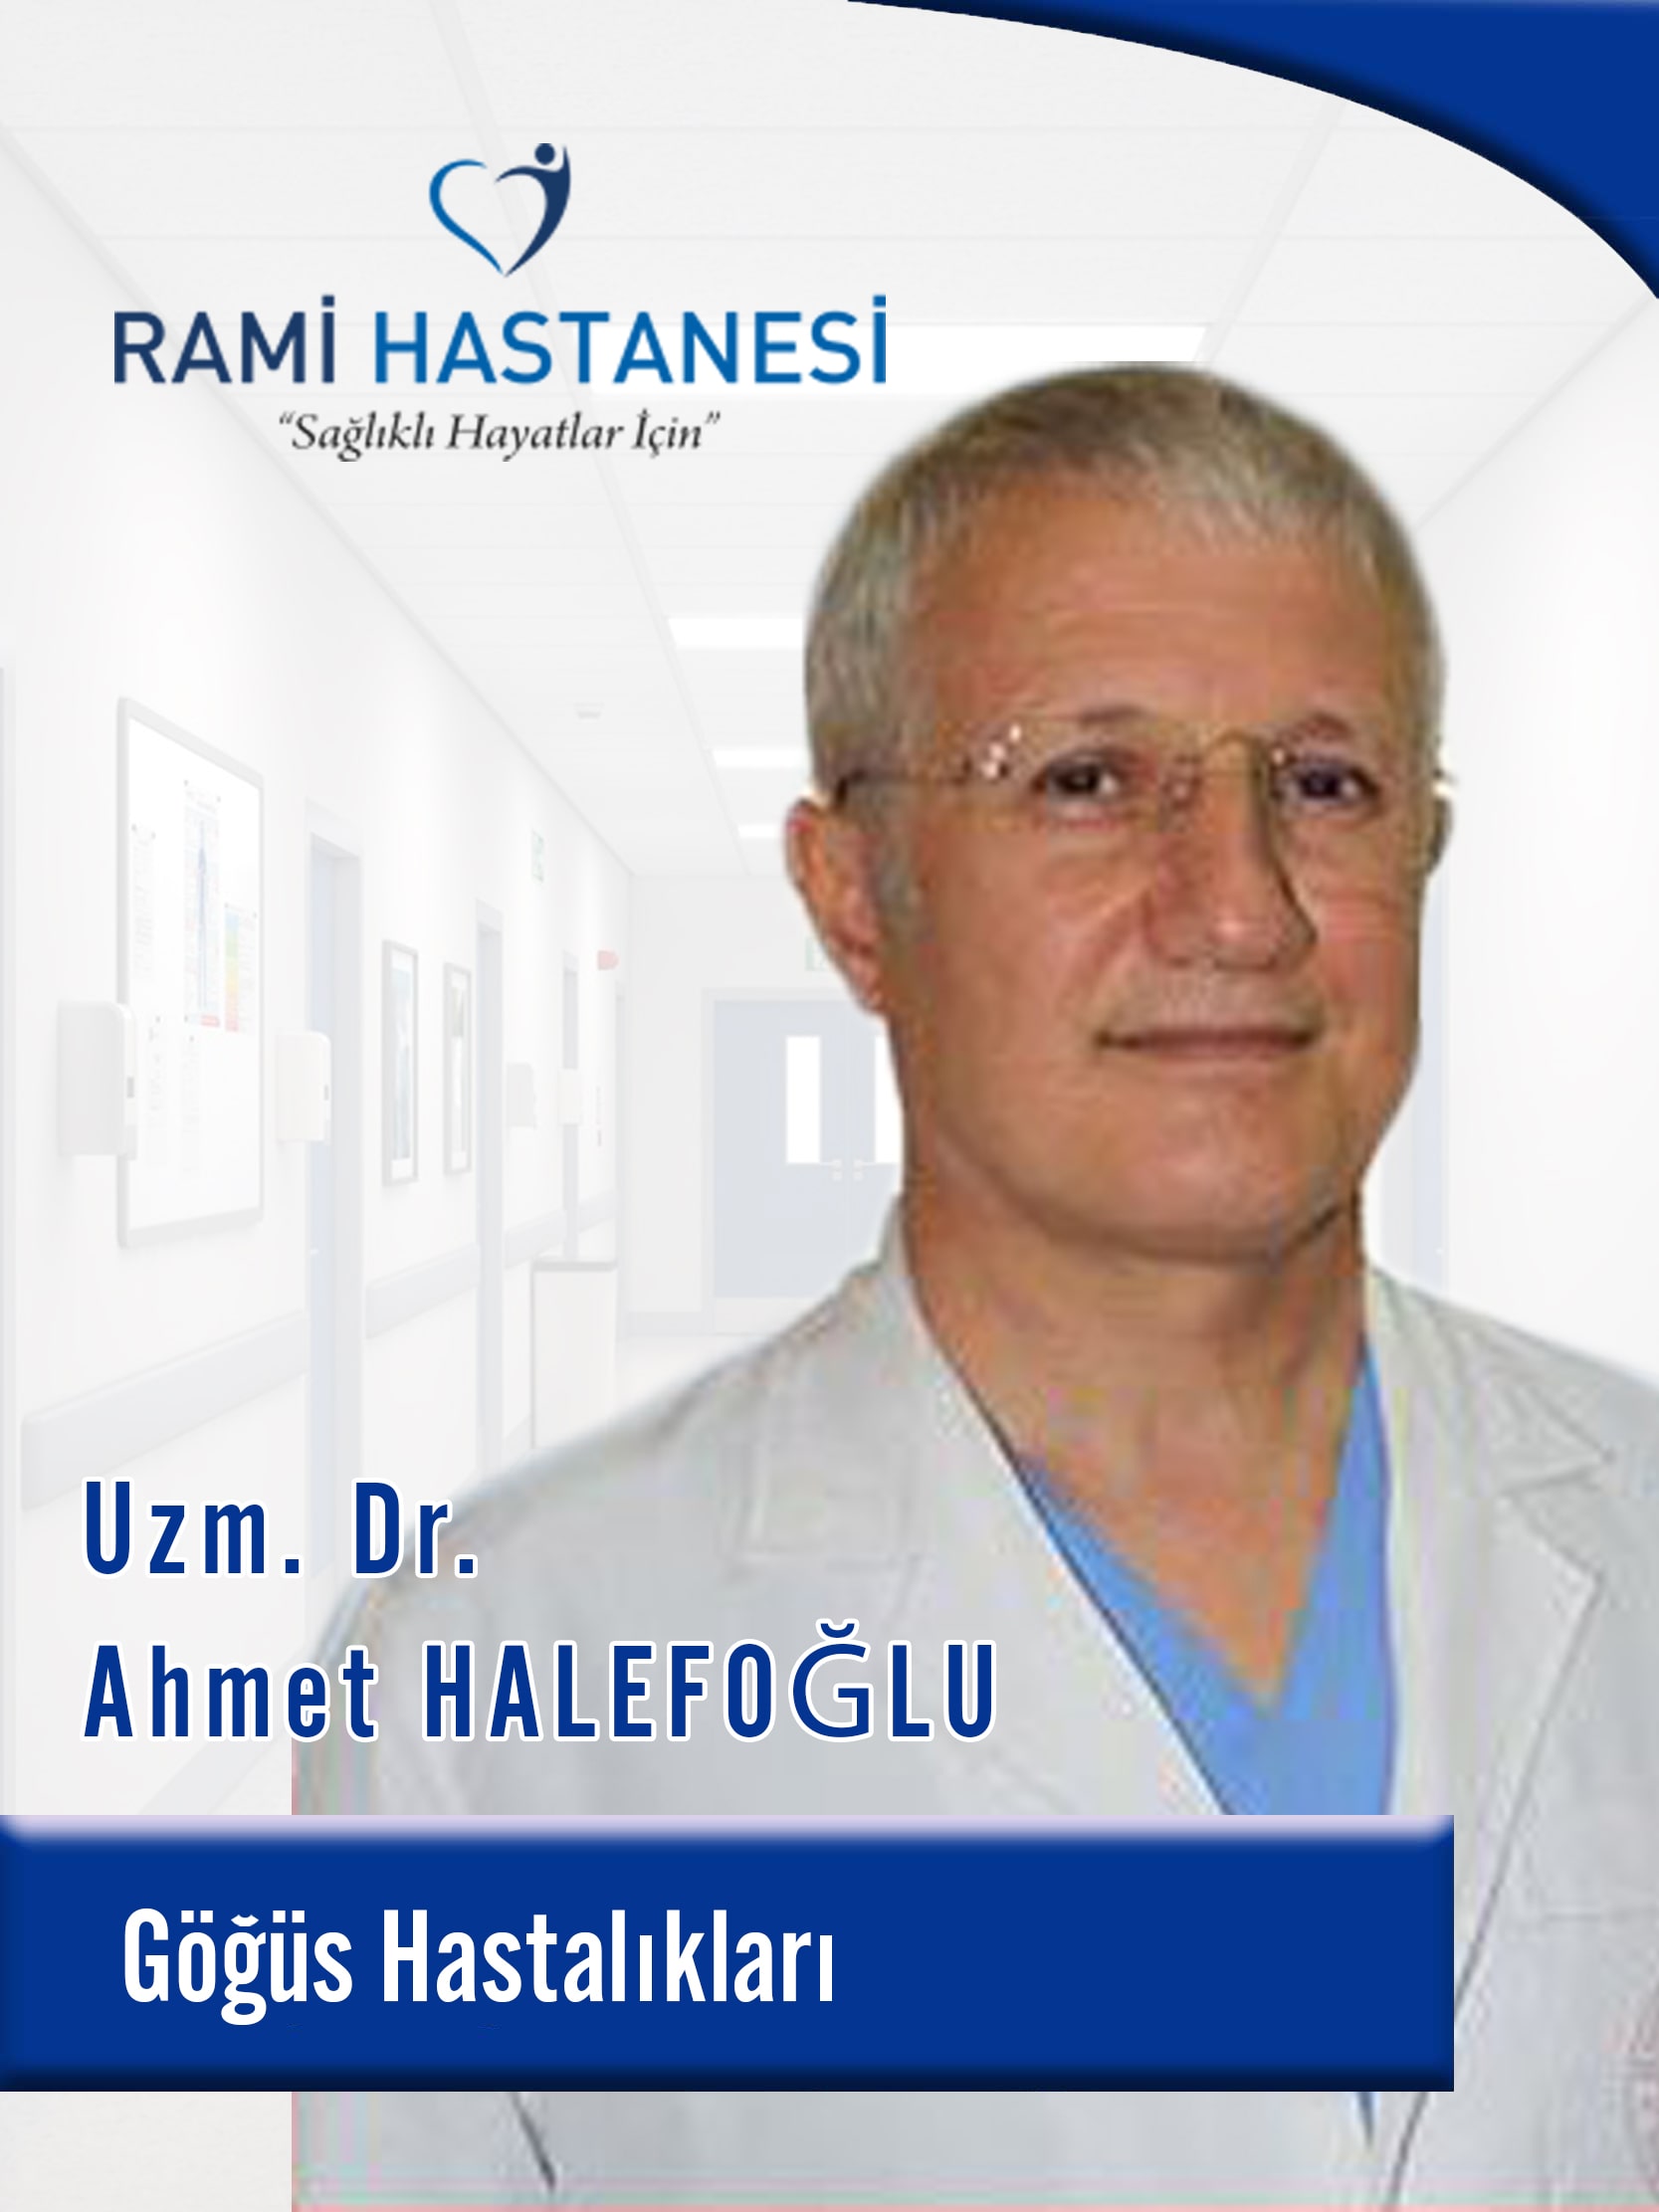 الدكتور الاخصائي Ahmet HALEFOĞLU